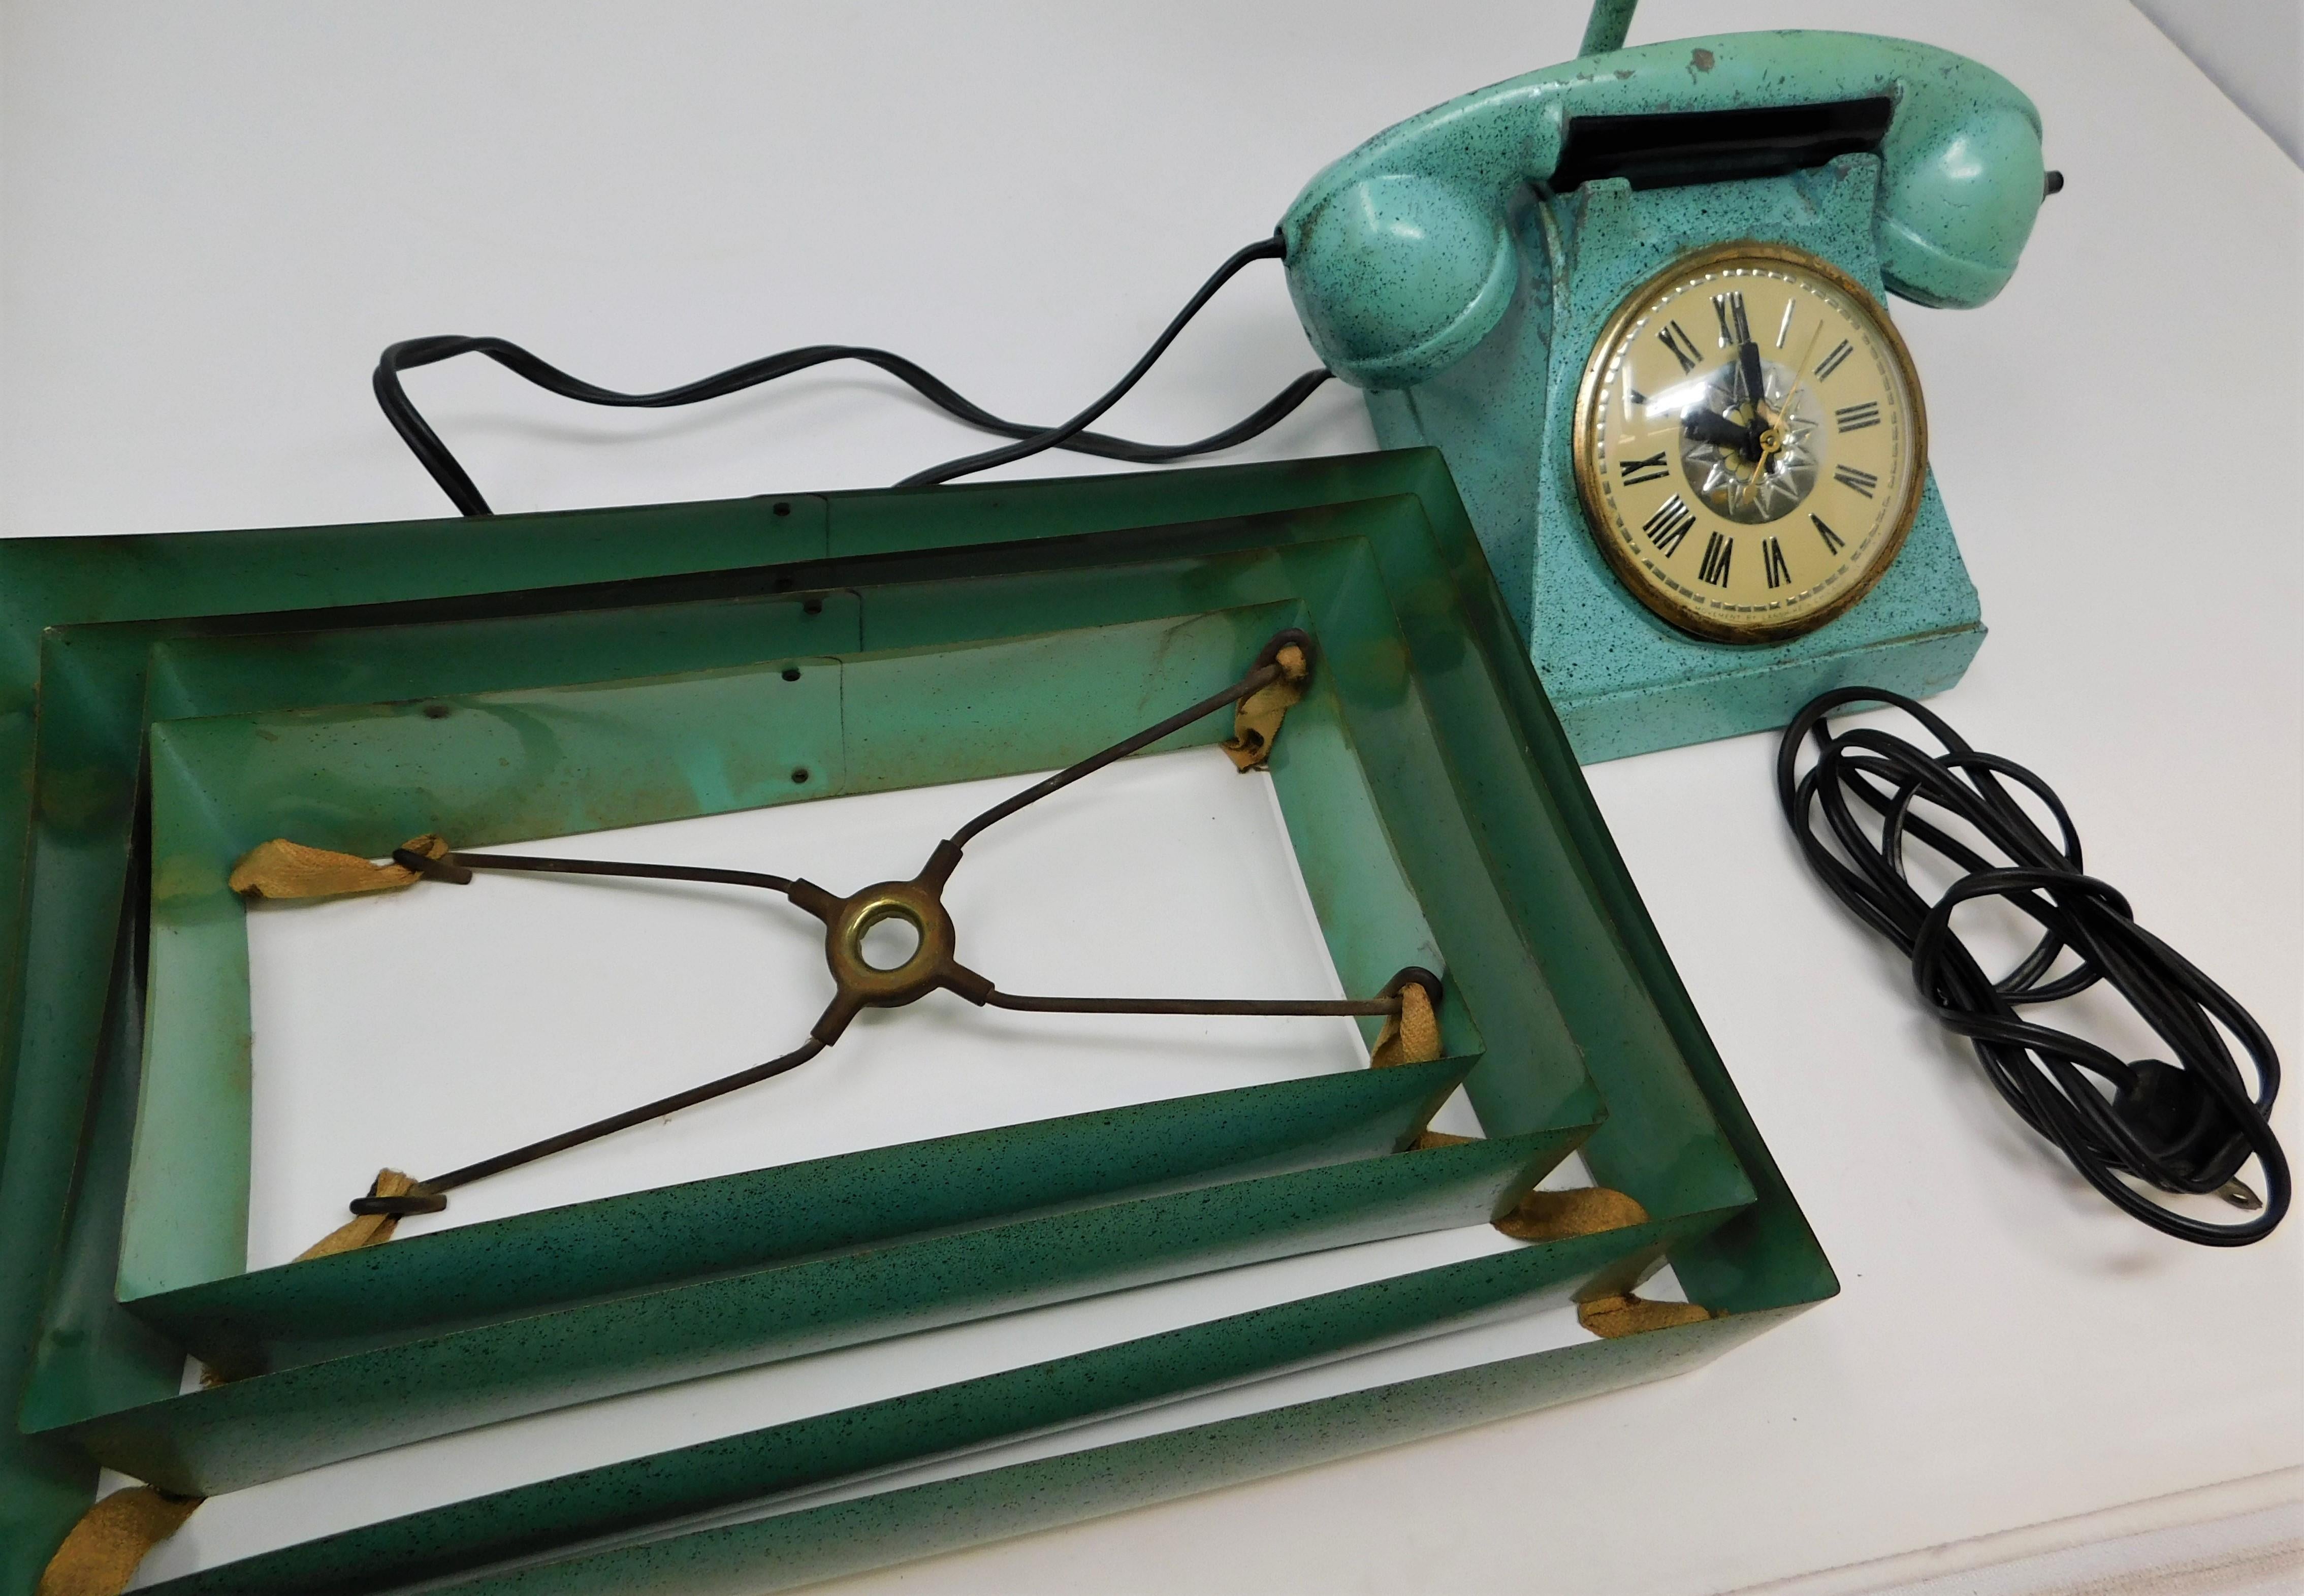 Vintage Trea Boye Kitsch Lighter Telephone Clock Teal Lamp Venetian Blind Shade 1